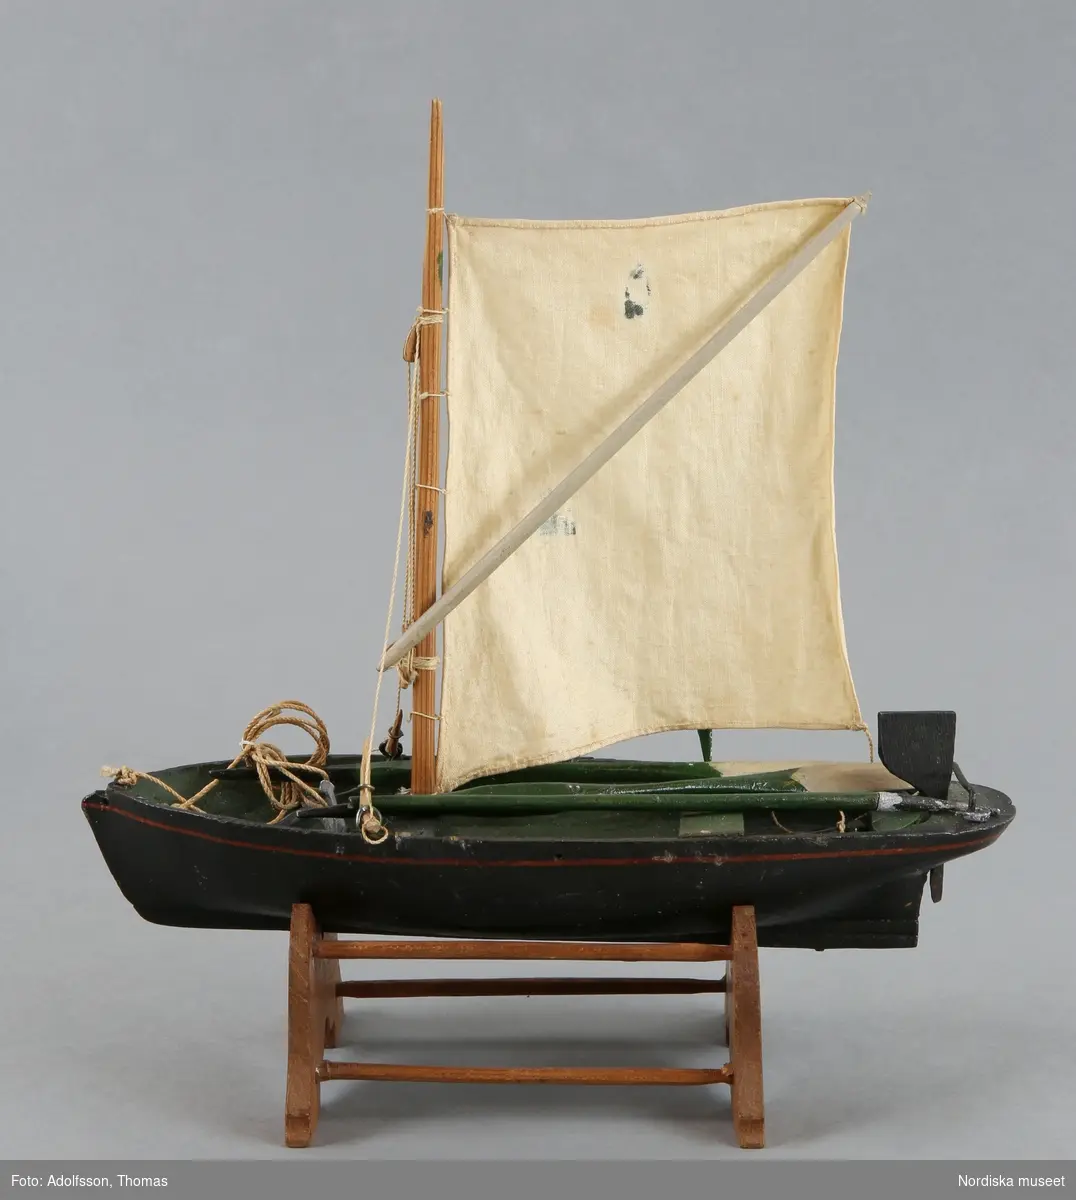 Inventering Sesam 1996-1999:
L 20,5, B 9, H 22 cm
Segelbåt "Ellida", av trä, svartmålad utanpå och grön inuti. Ett naturfärgat bomullssegel, ett par åror, en båtshake, ett ankare, ett öskar och ett roder. Båten har två tofter, varav den främre är fäste för masten. Båten står på en träställning. Tillverkades 1858 av nuvarande överlotsen Wirsén på Örö i Kalmar län, vid omkring 15 års ålder. 
Helena Carlsson 1996